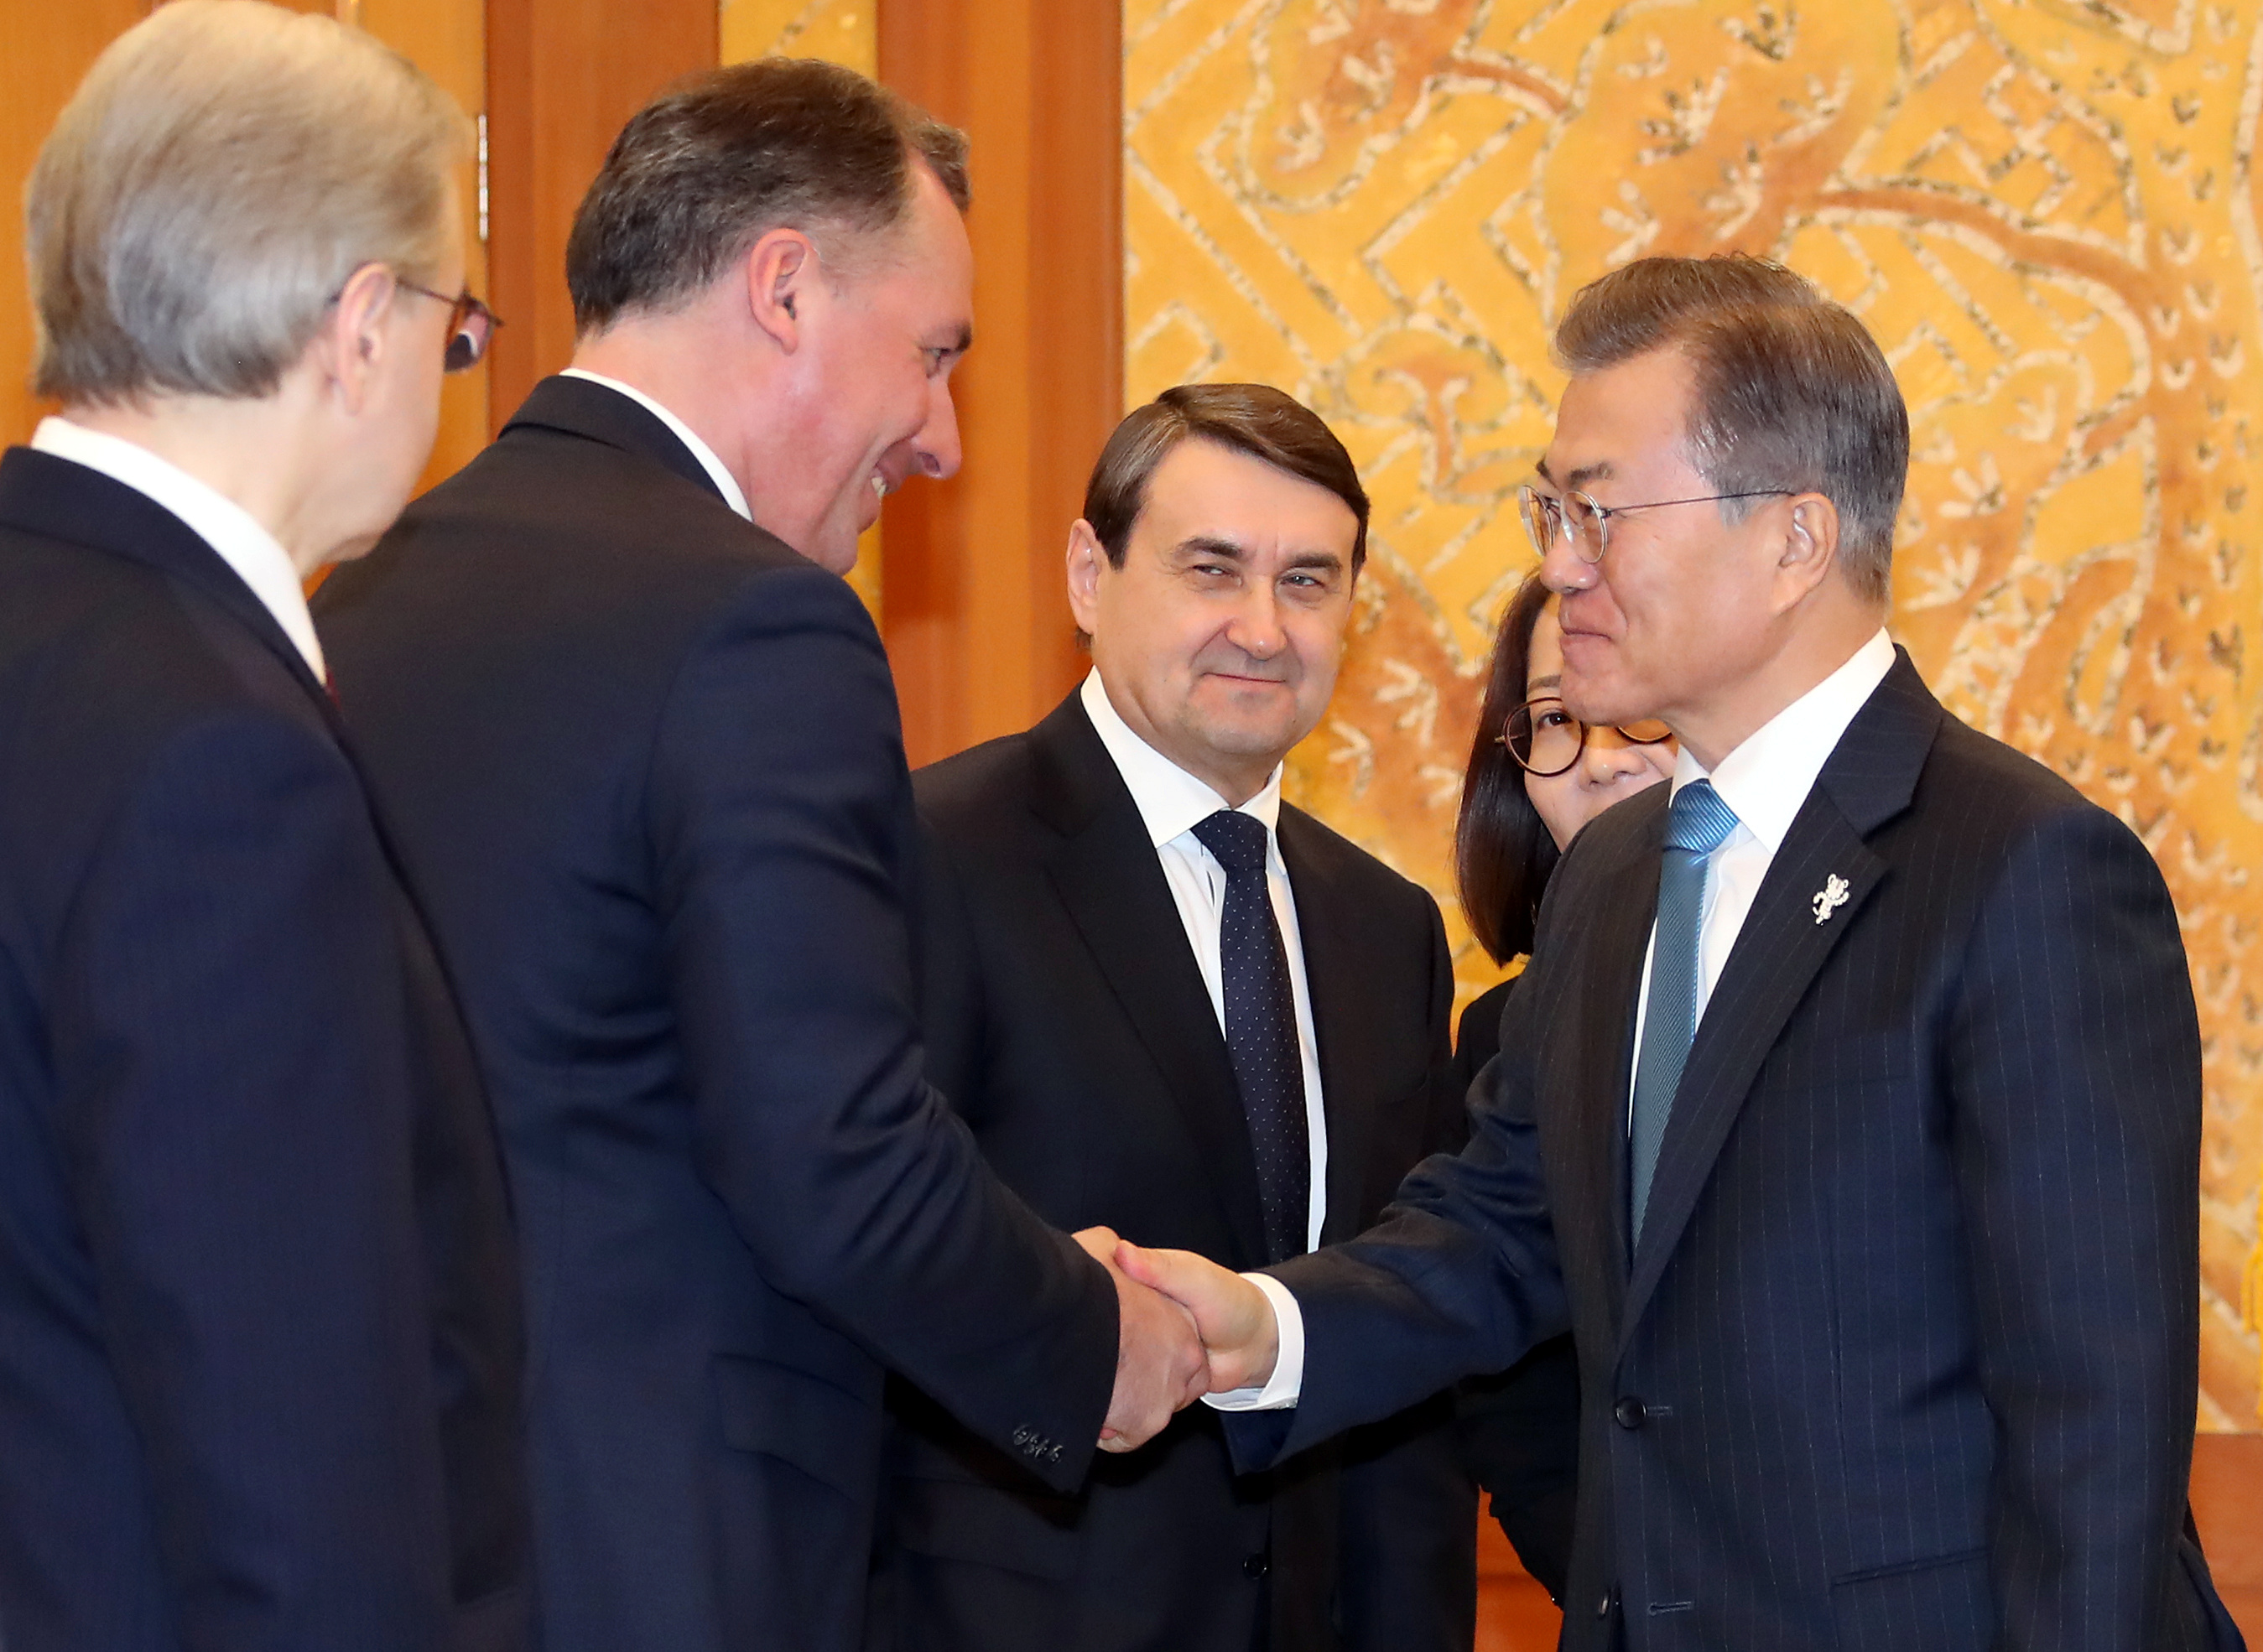 رئيس كوريا الجنوبية يستقبل وفد رياضى روسى